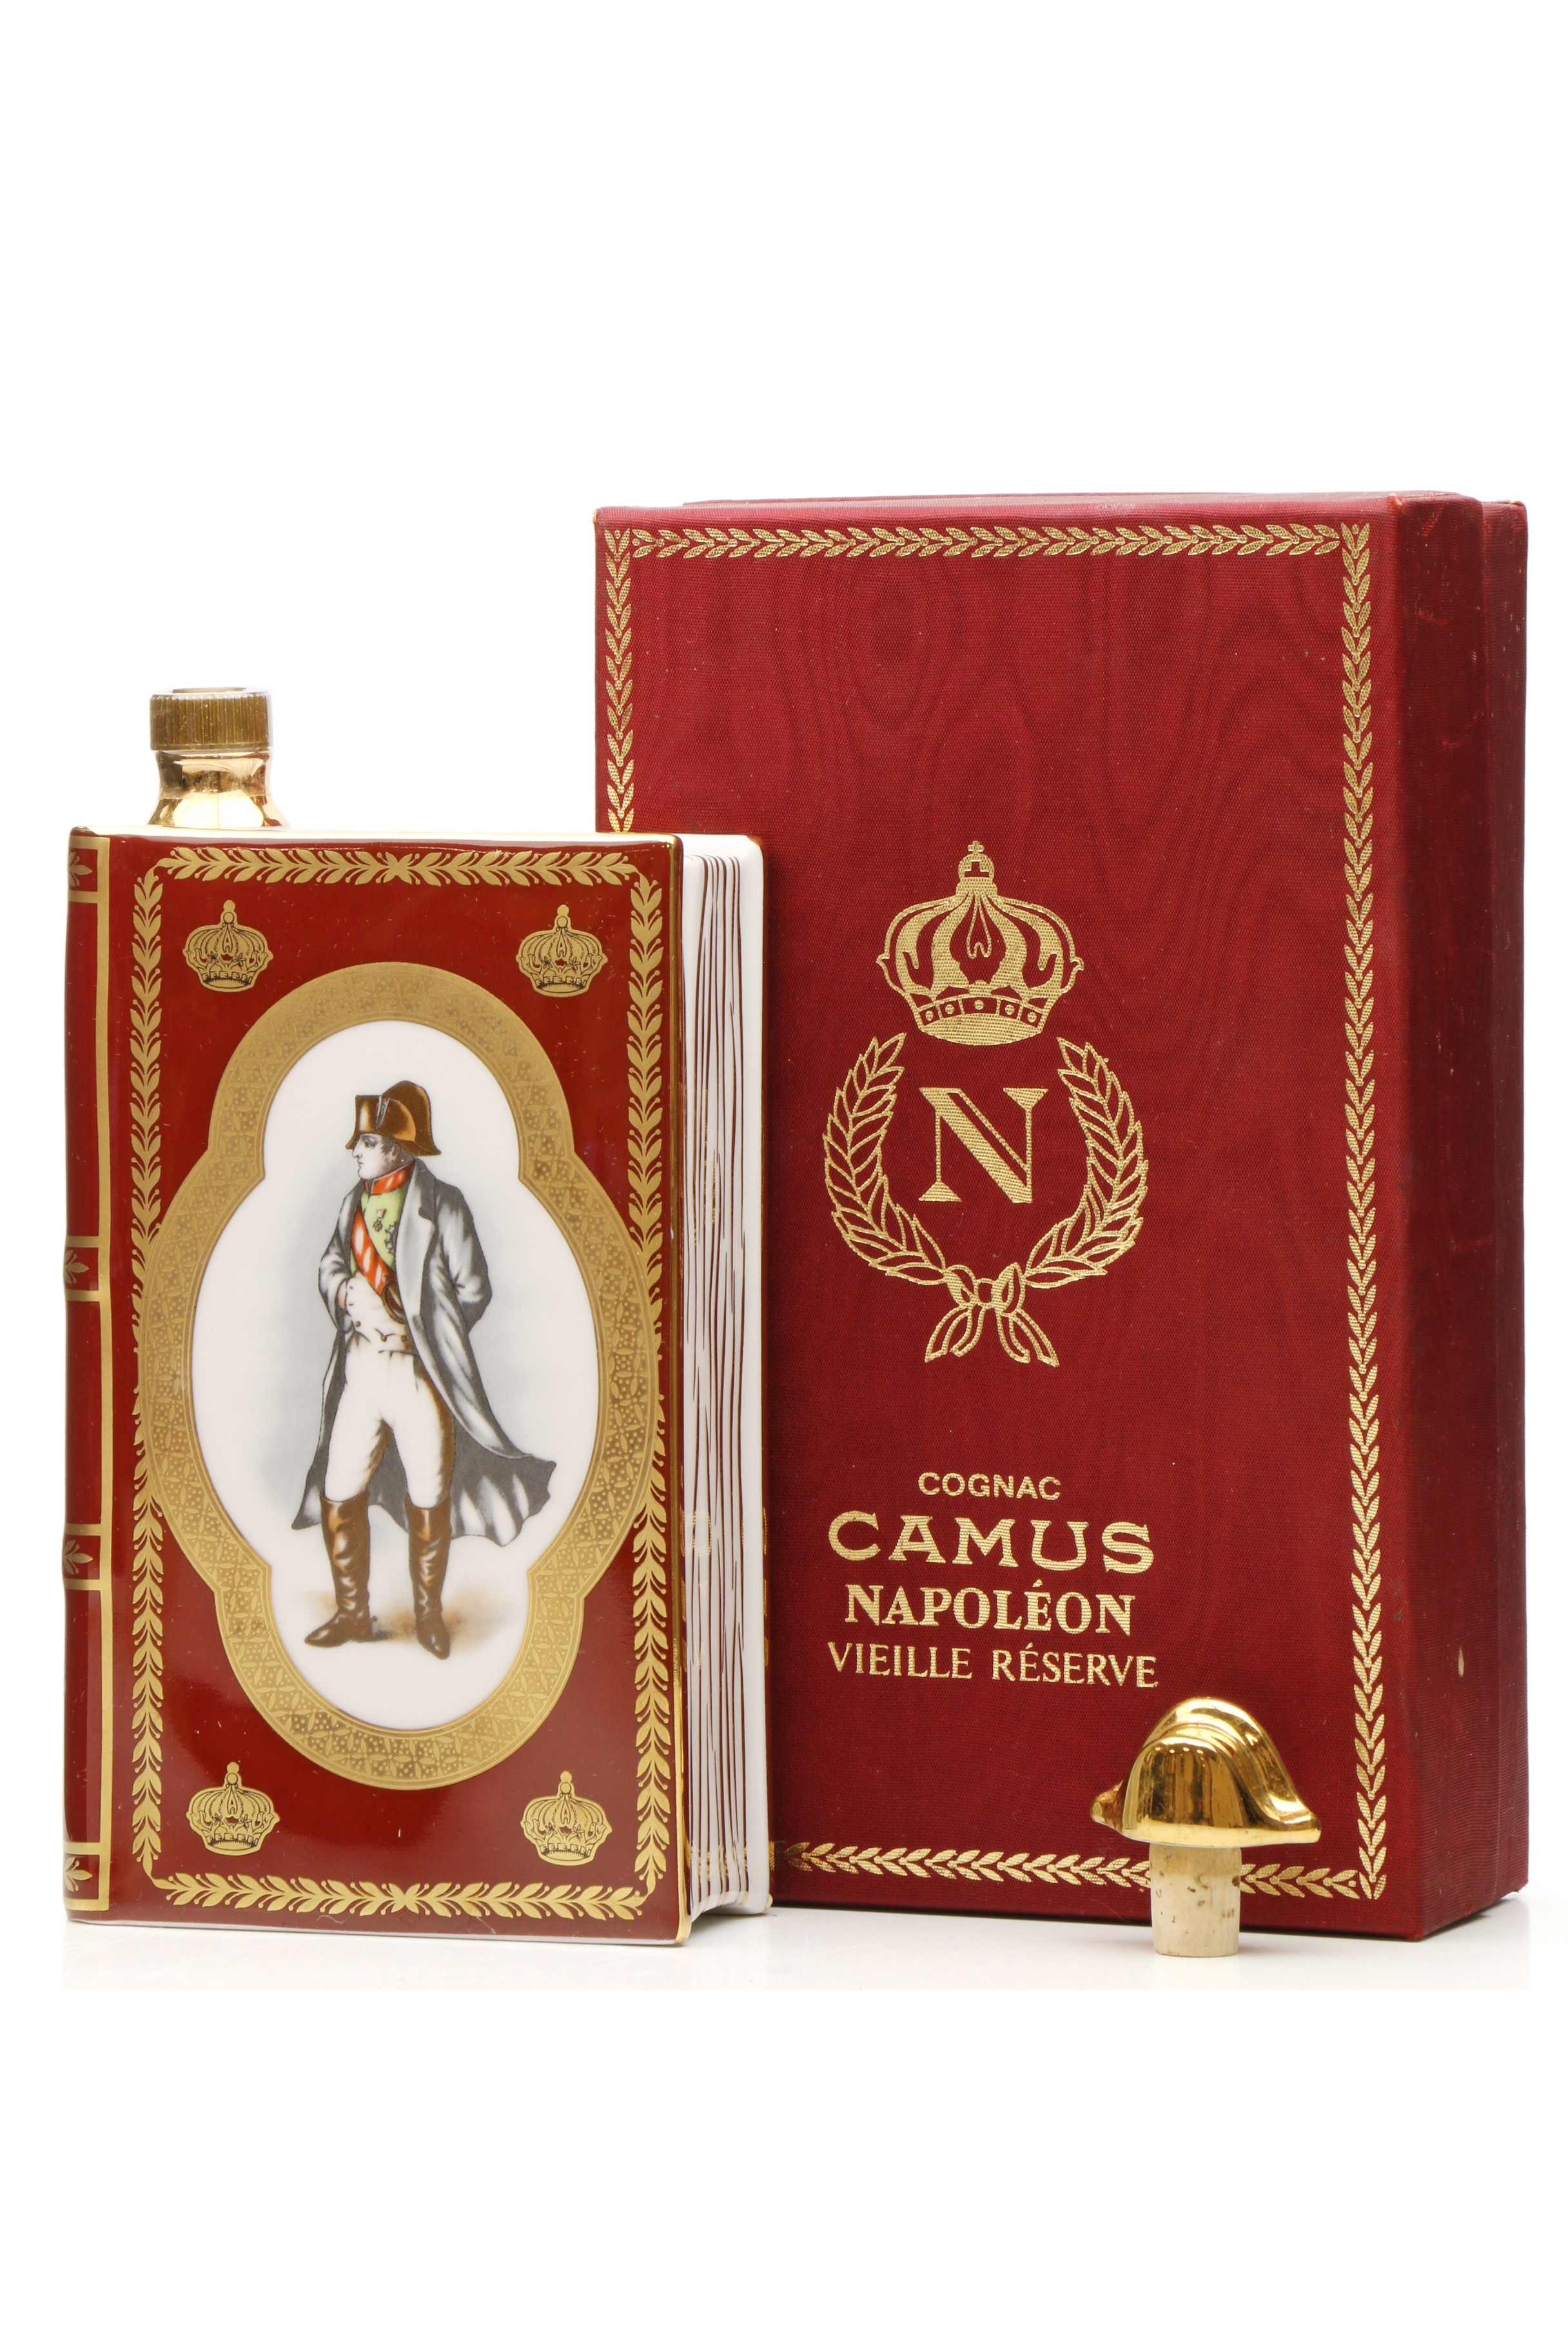 Napoleon Camus Cognac - Just Whisky Auctions